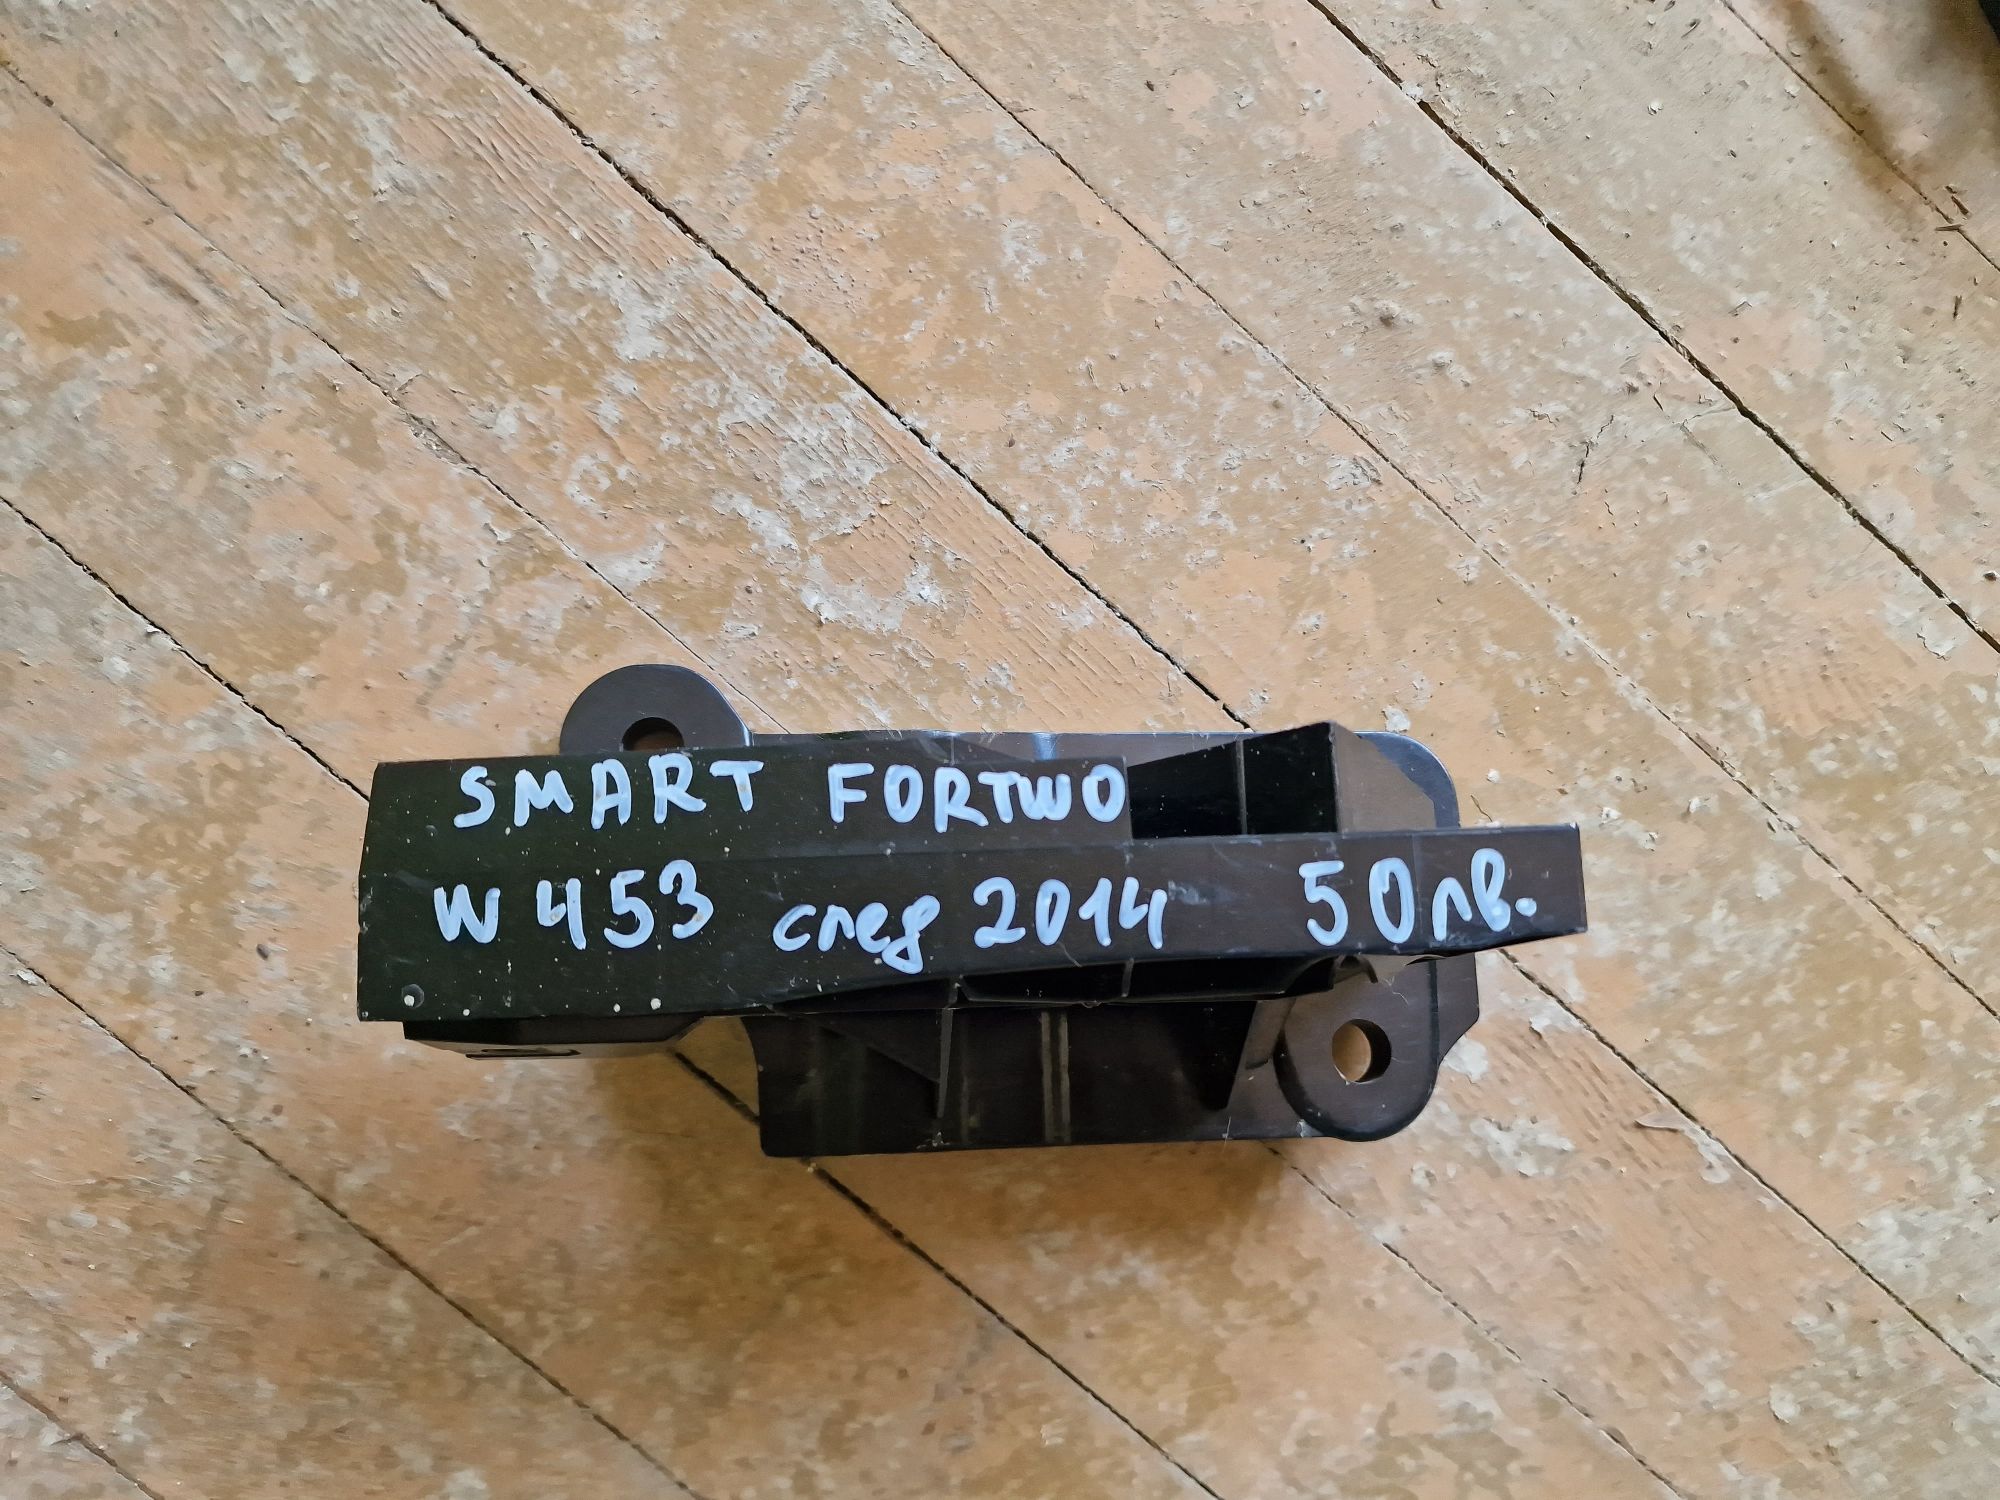 Smart Fortwo w453 след 2014 предна броня държач греда